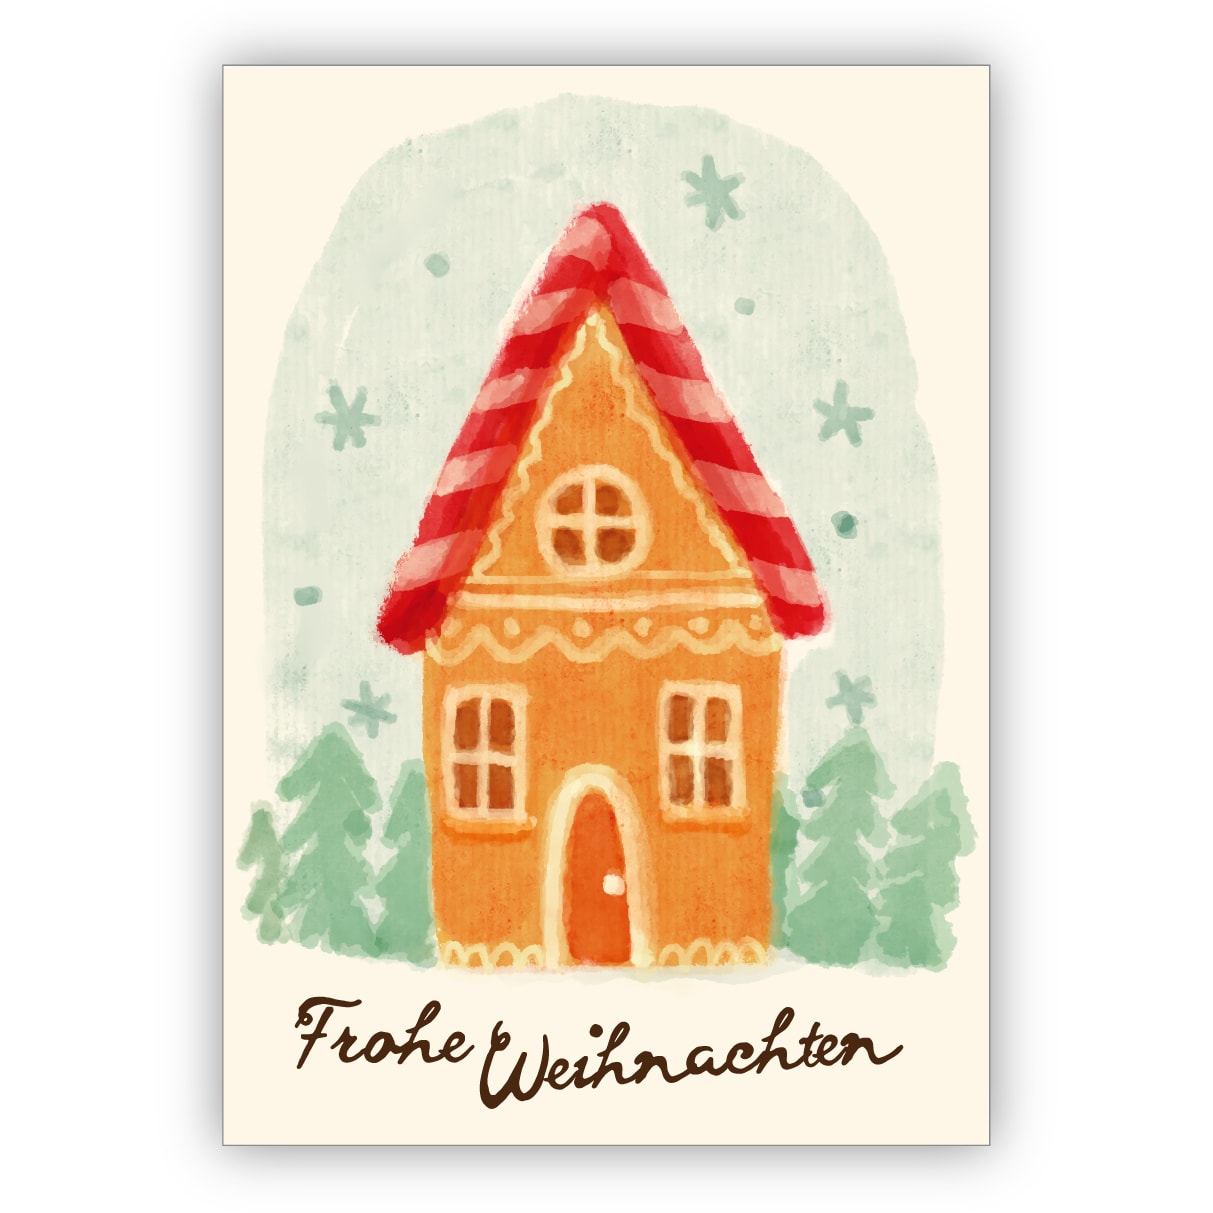 Süße 50er Jahre Retro Vintage Weihnachtskarte mit Lebkuchen Haus: Frohe Weihnachten